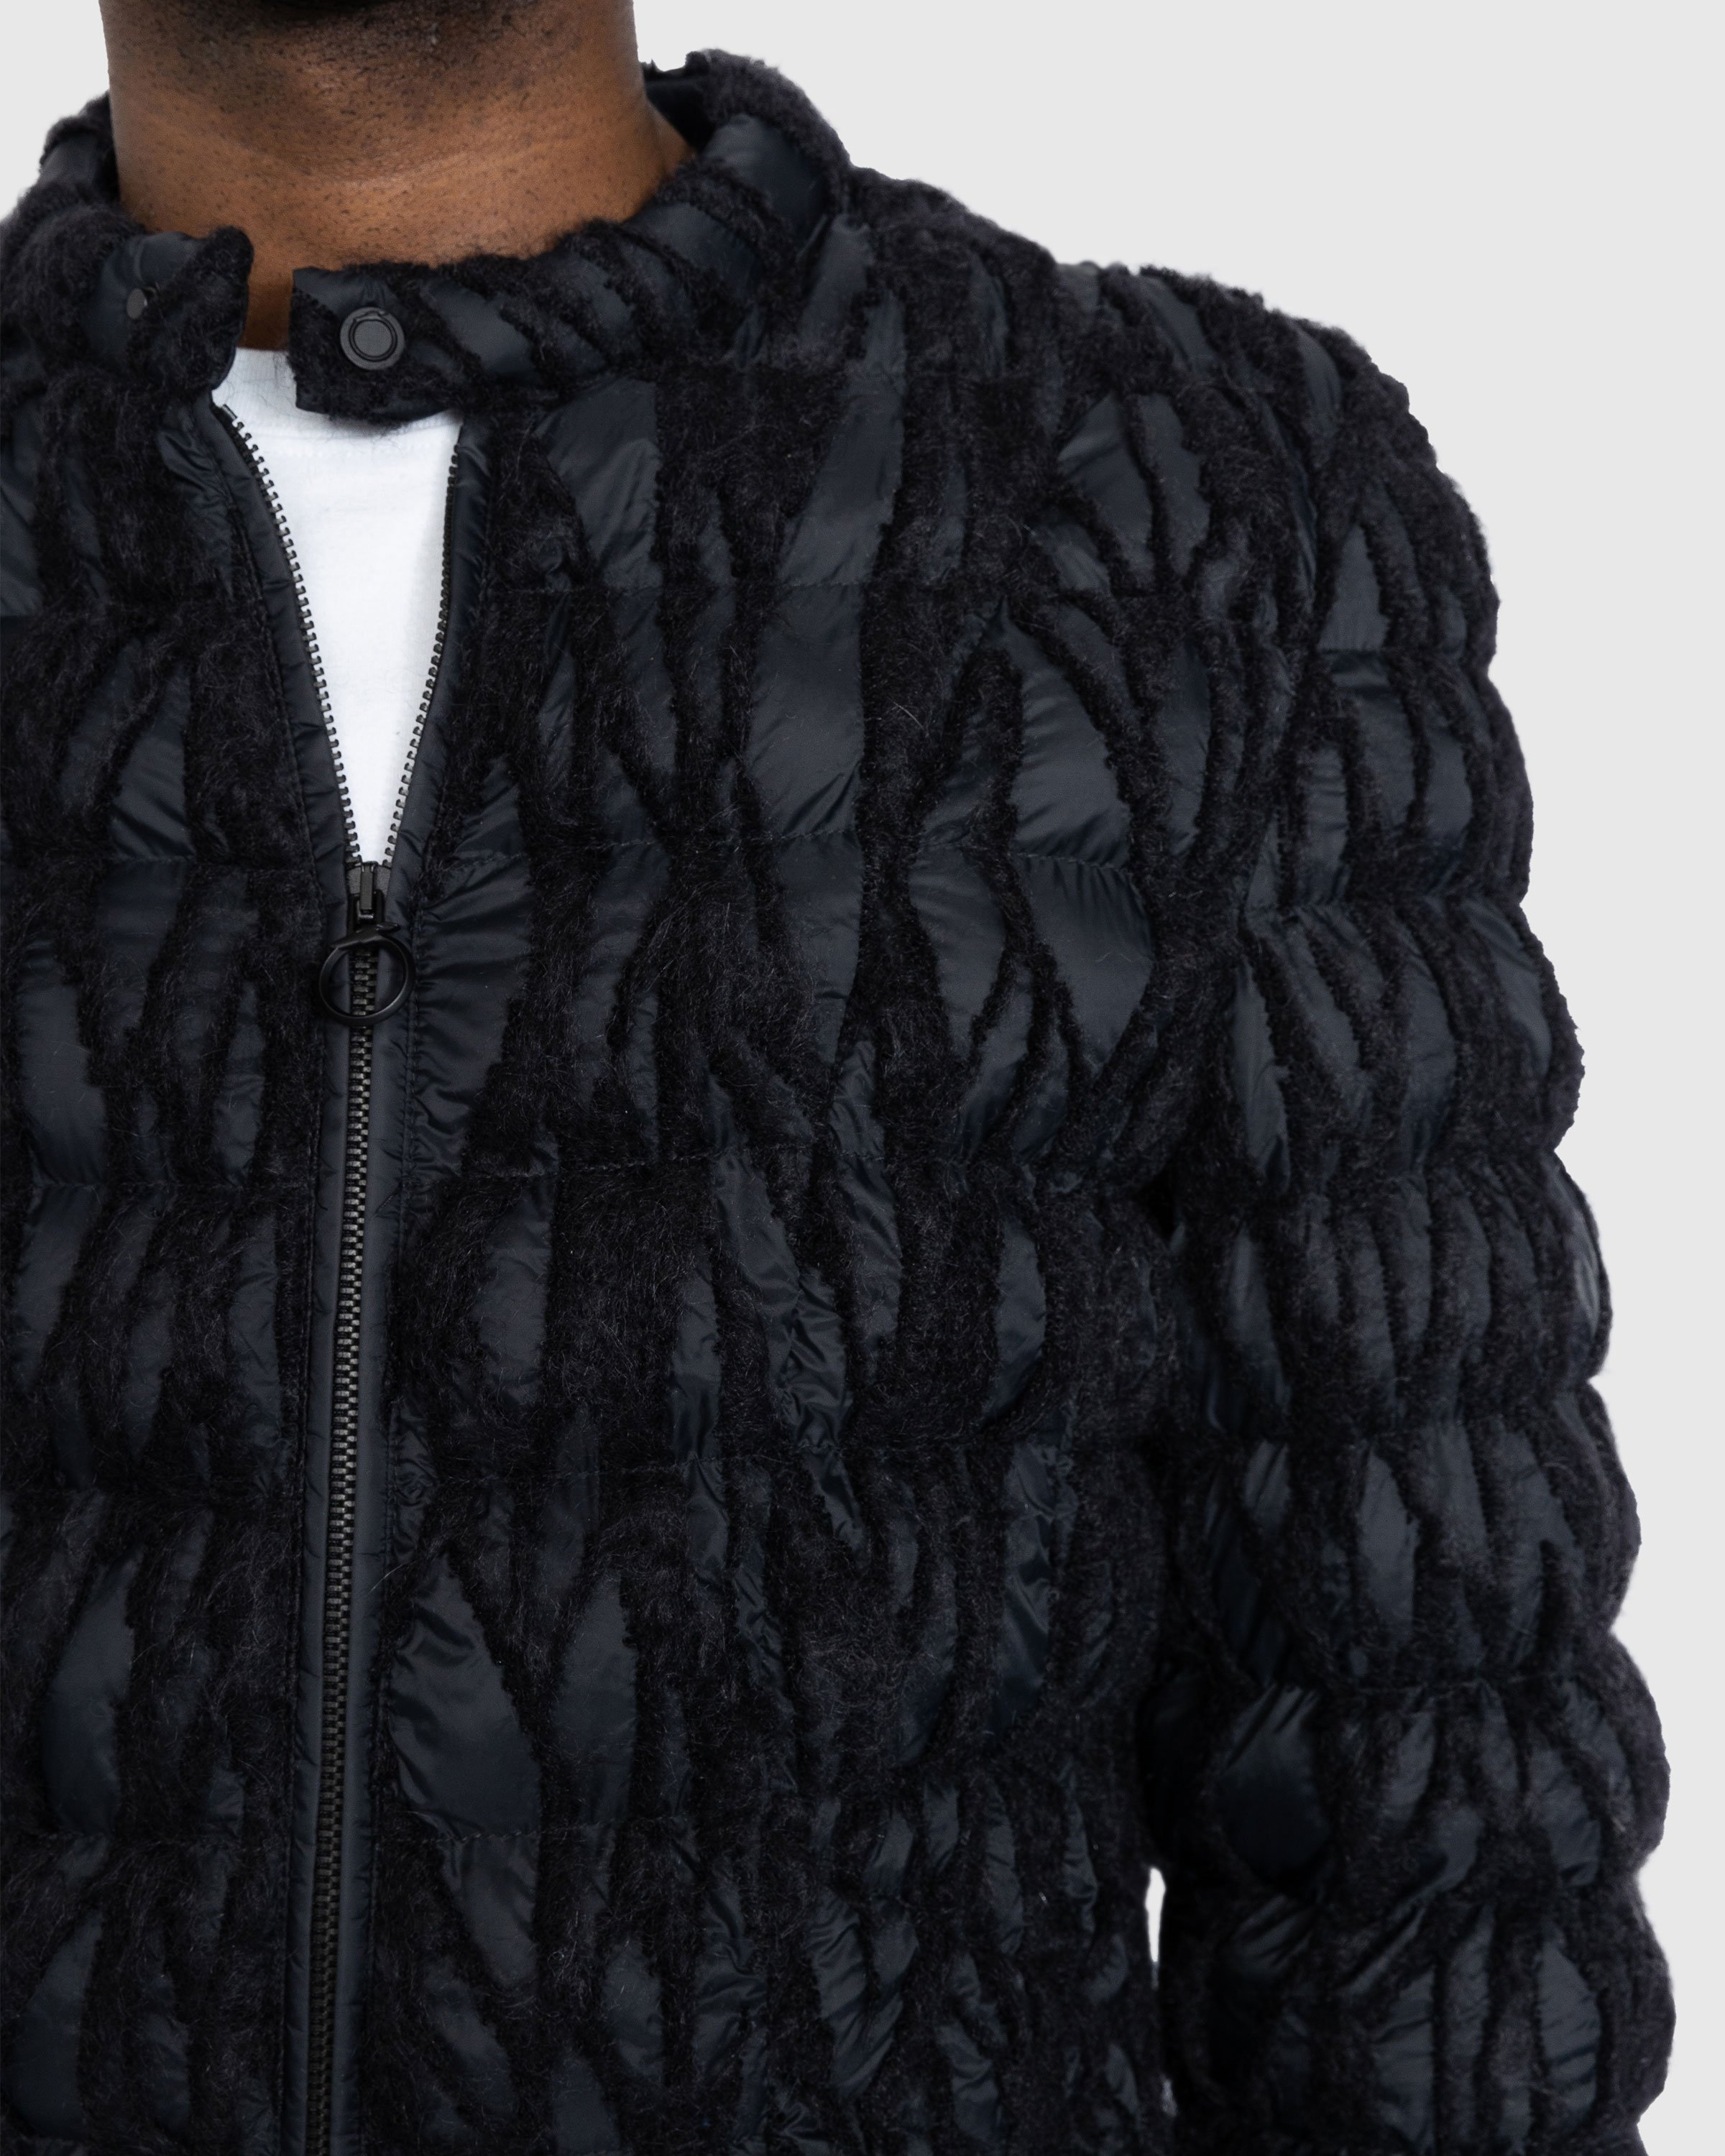 Trussardi - Embroidered Nylon Jacket Black - Clothing - Black - Image 5